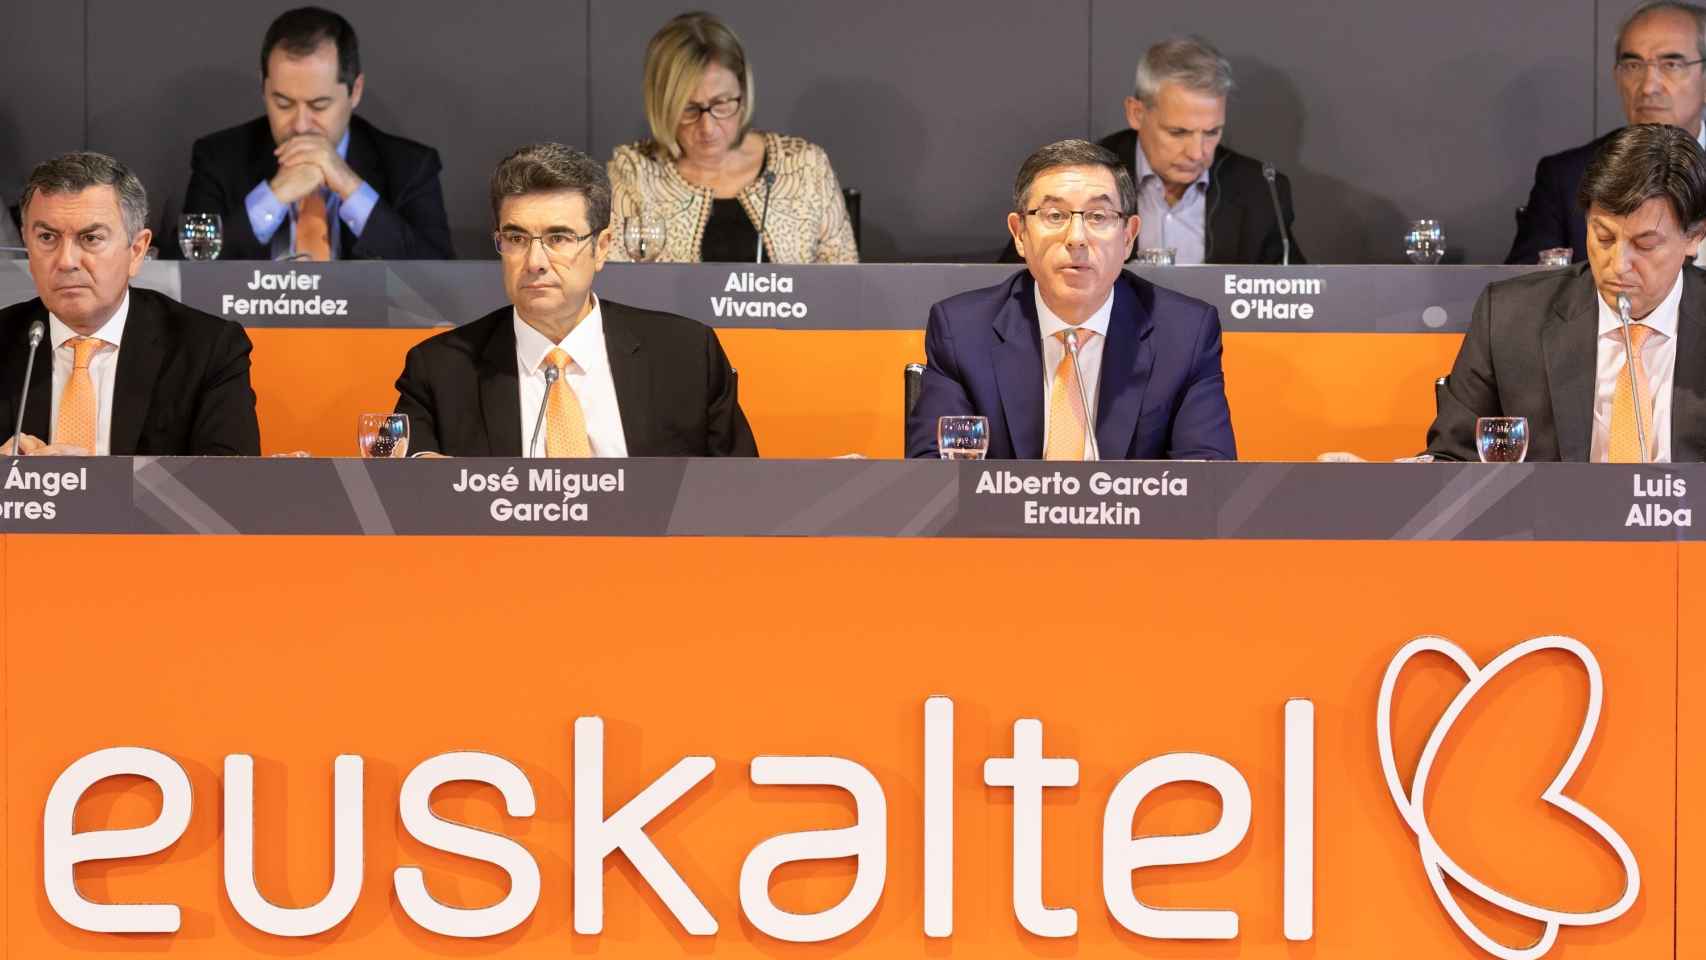 Eamonn O'Hare, consejero delegado de Zegona, en la junta de accionistas de Euskaltel de 2019 (segundo por la derecha en la fila superior)